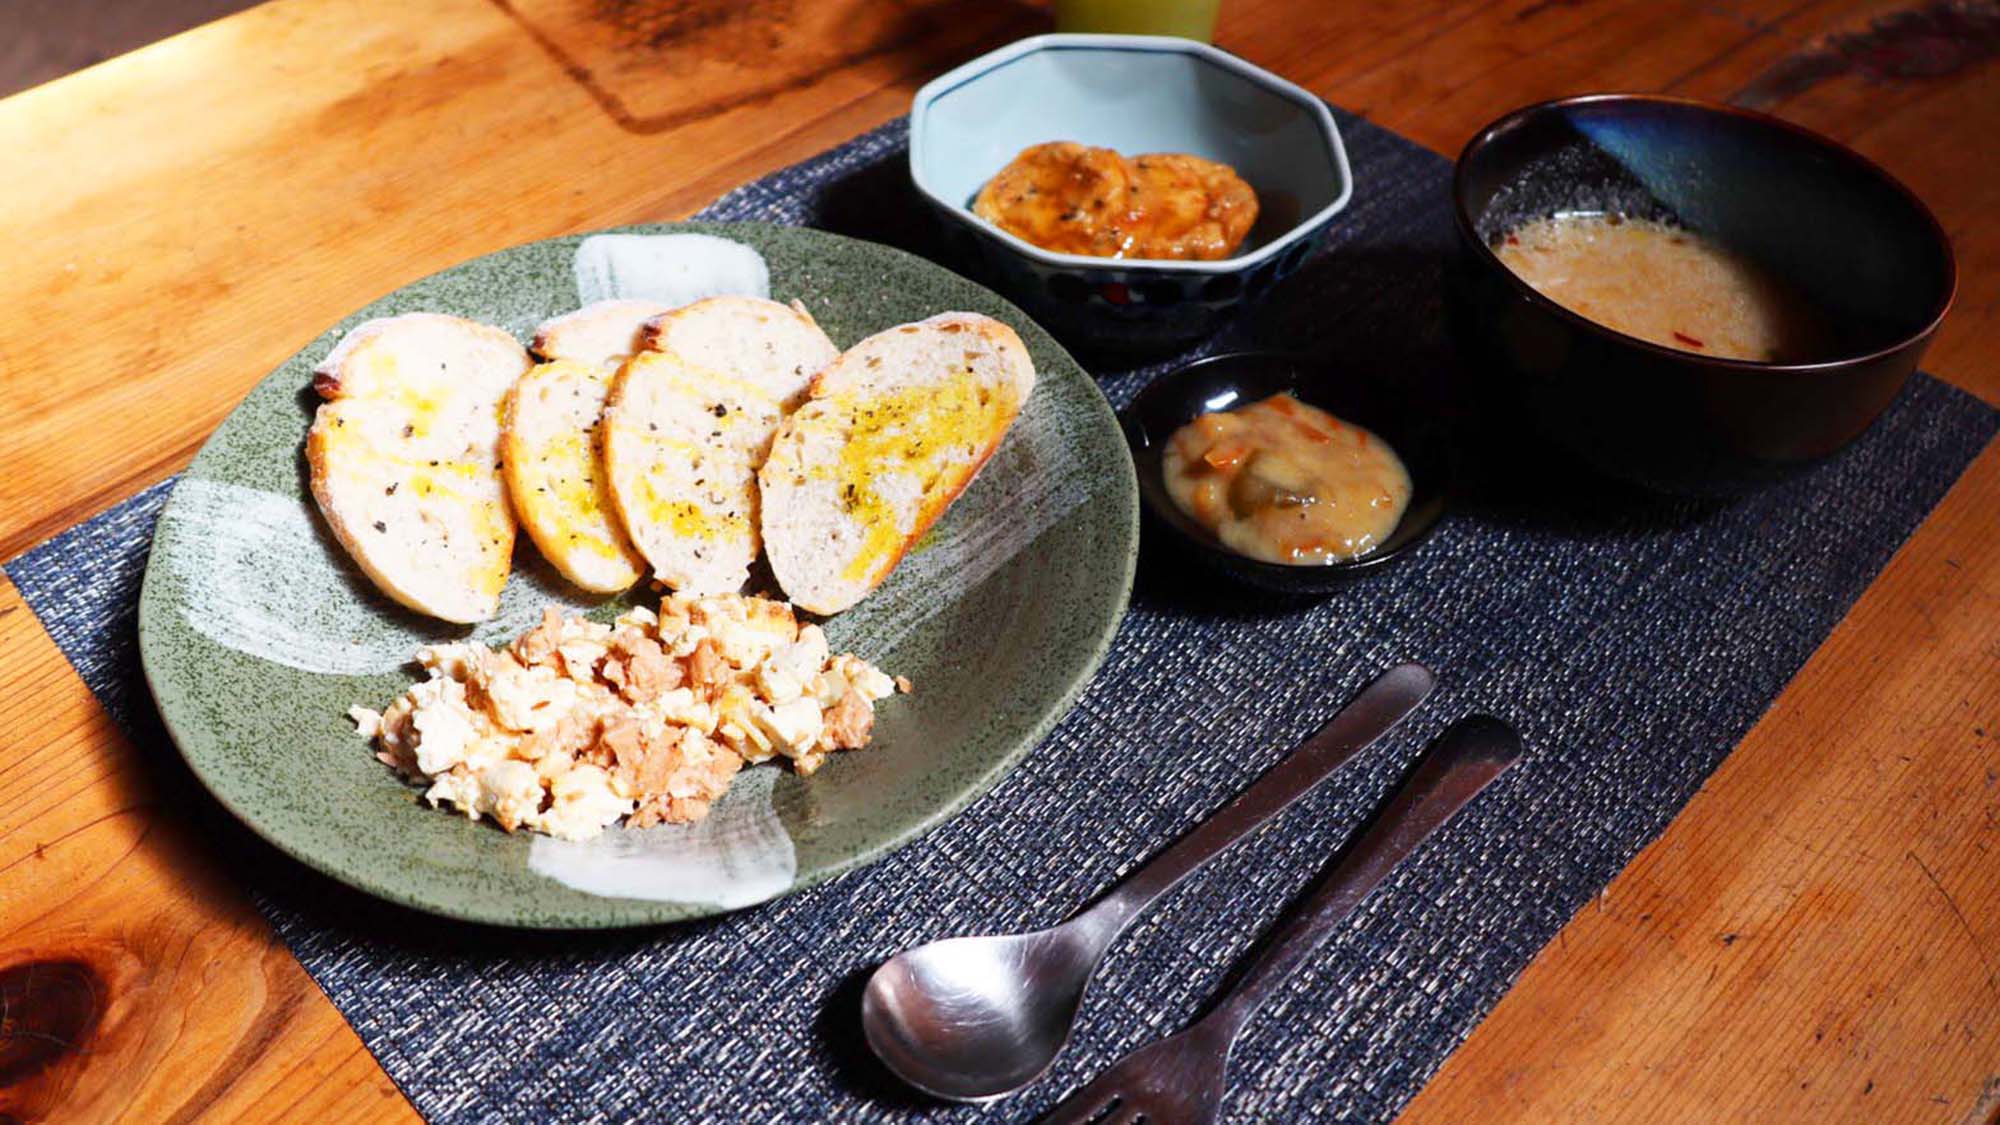 ・＜洋朝食＞パンやスクランブルエッグ風のお豆腐など、洋食の朝ごはんもございます。